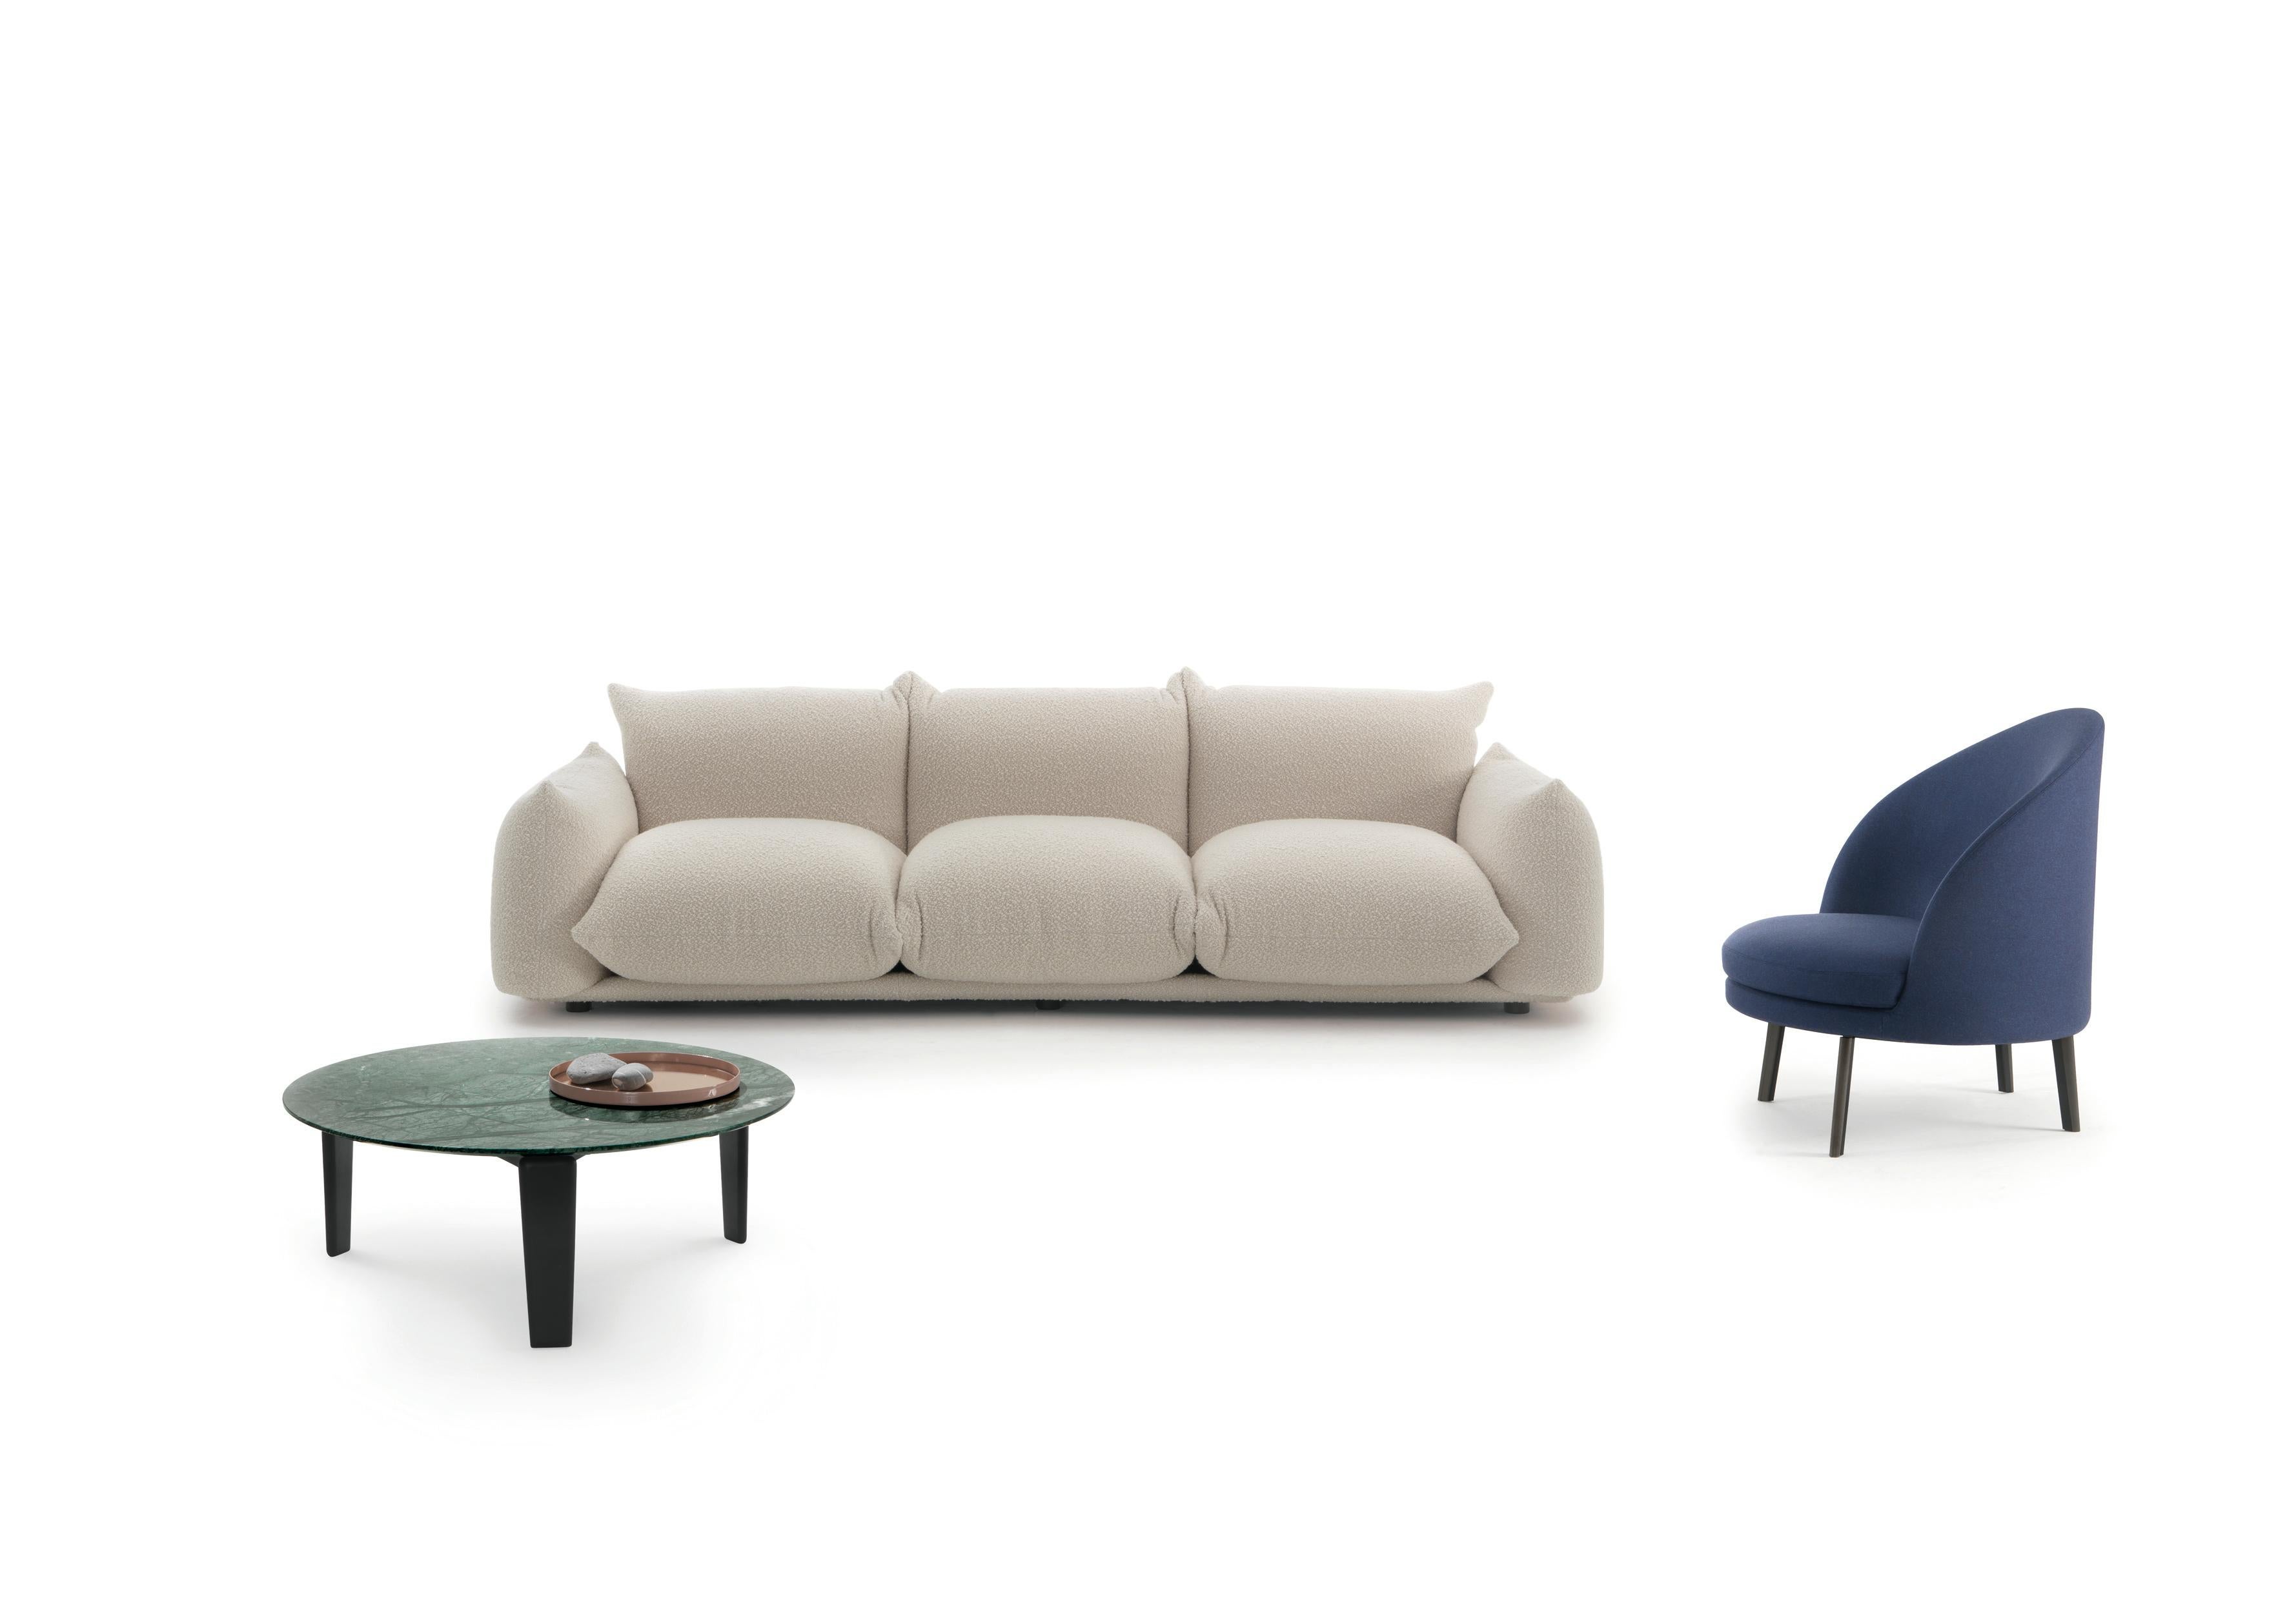 Das Marenco Sofa wurde von Mario Marenco für Arflex entworfen. Dieses Sofa zeichnet sich durch das System aus, bei dem die Armlehne und der Sitz als Basisteil dienen. Es ist ein Metallrohrrahmen für die Aufnahme der Kissen erleichtert, die fest und